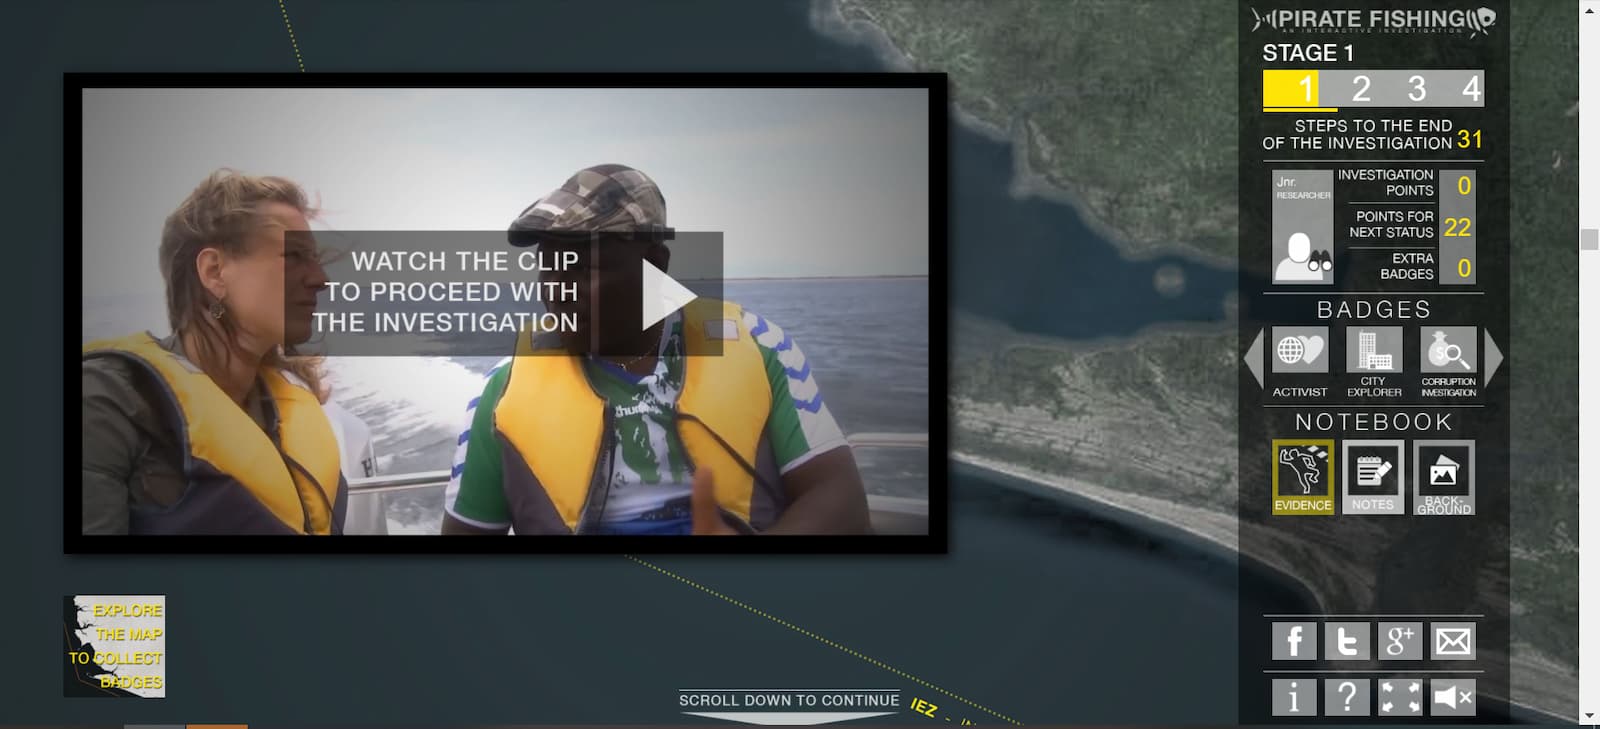 Лонгрид «Pirate fishing documentary» о нелегальной рыбной ловле в Западной Африке